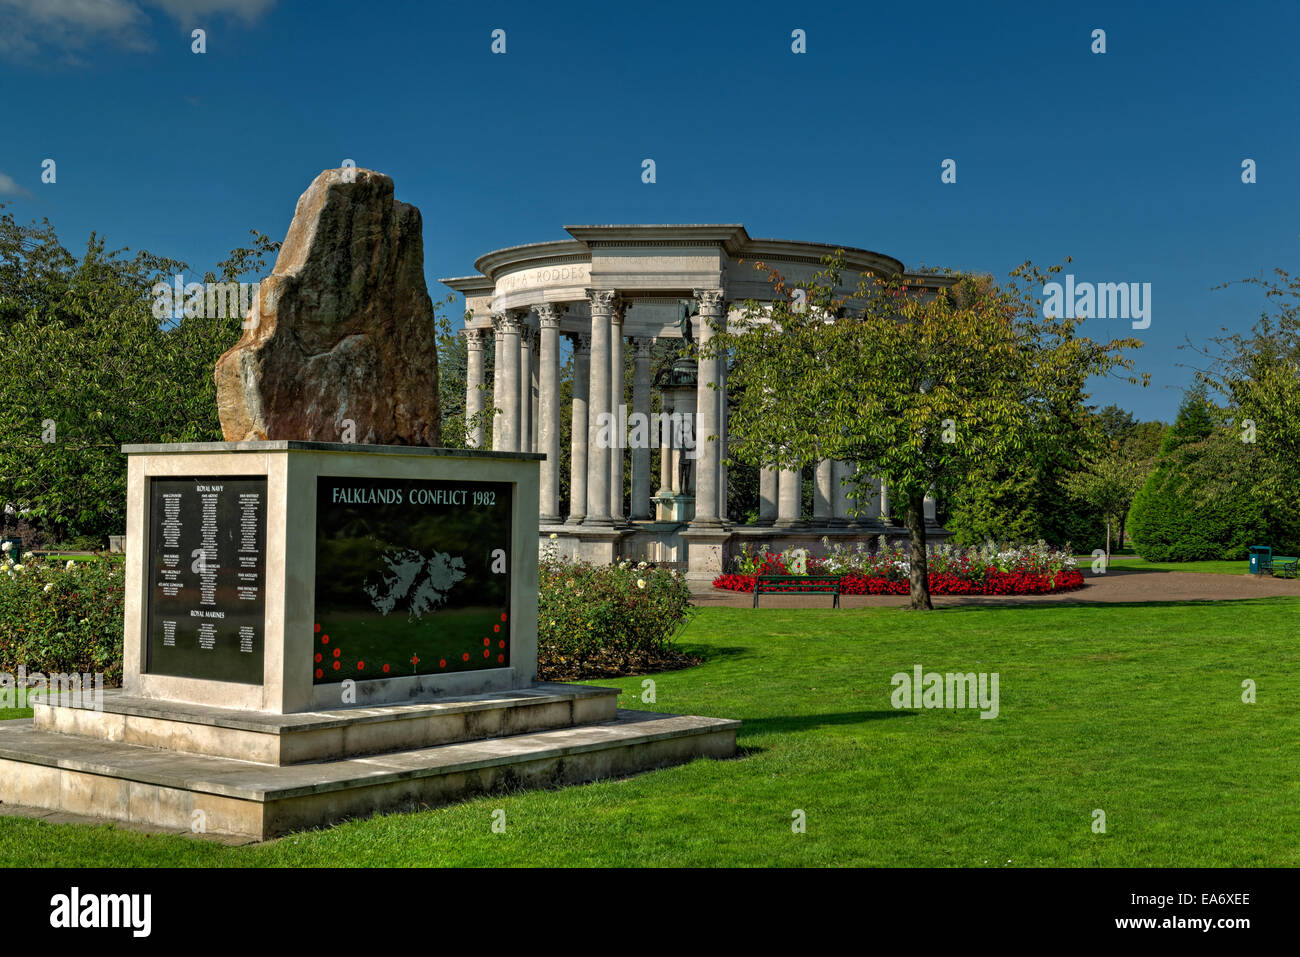 Les monuments commémoratifs de la Seconde Guerre mondiale et le conflit des Malouines dans un Cathays Park, Cardiff Civic Center Banque D'Images